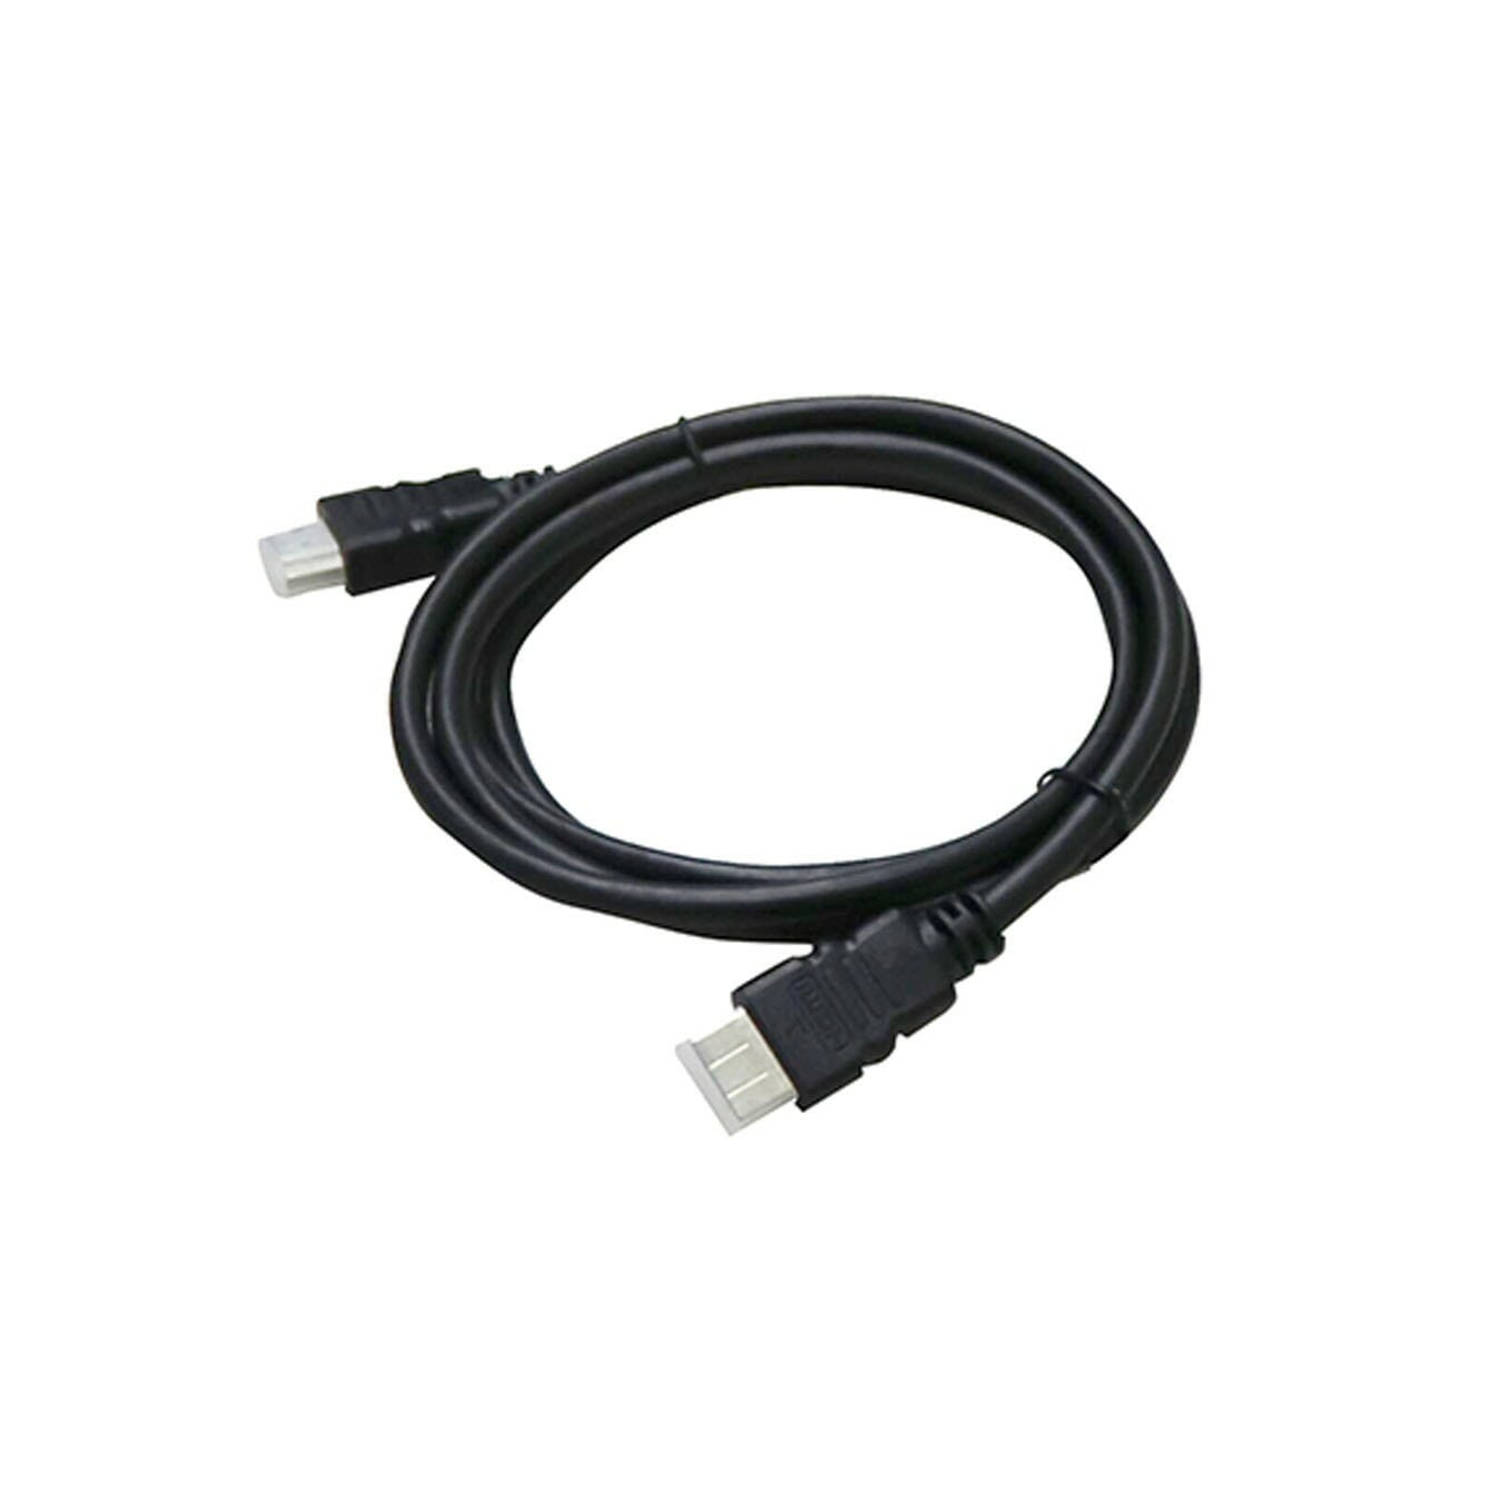 Hyundai Electronics - HDMI Audio kabel - 1,5meter - Zwart